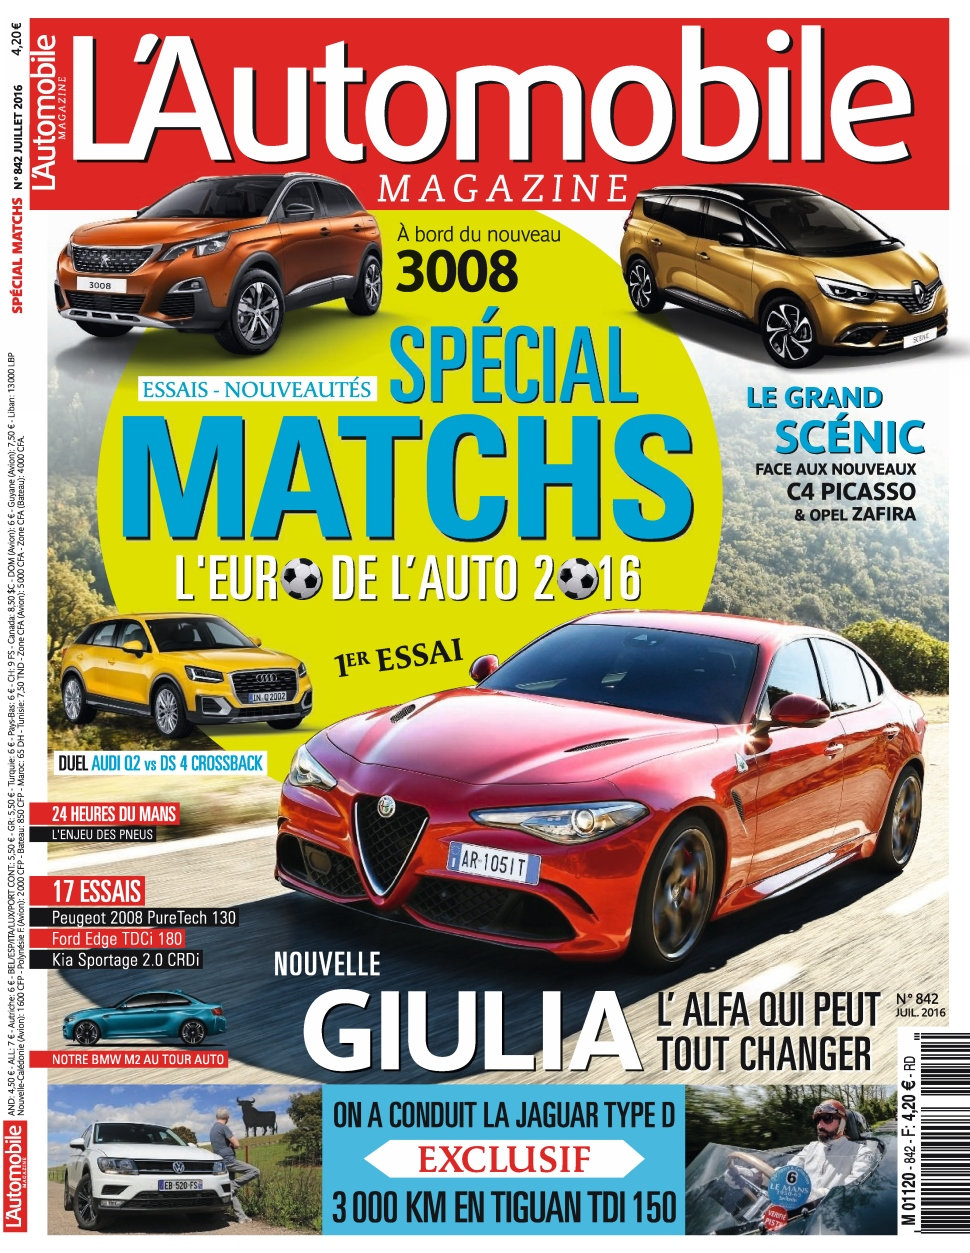 L'Automobile Magazine N°842 - Juillet 2016